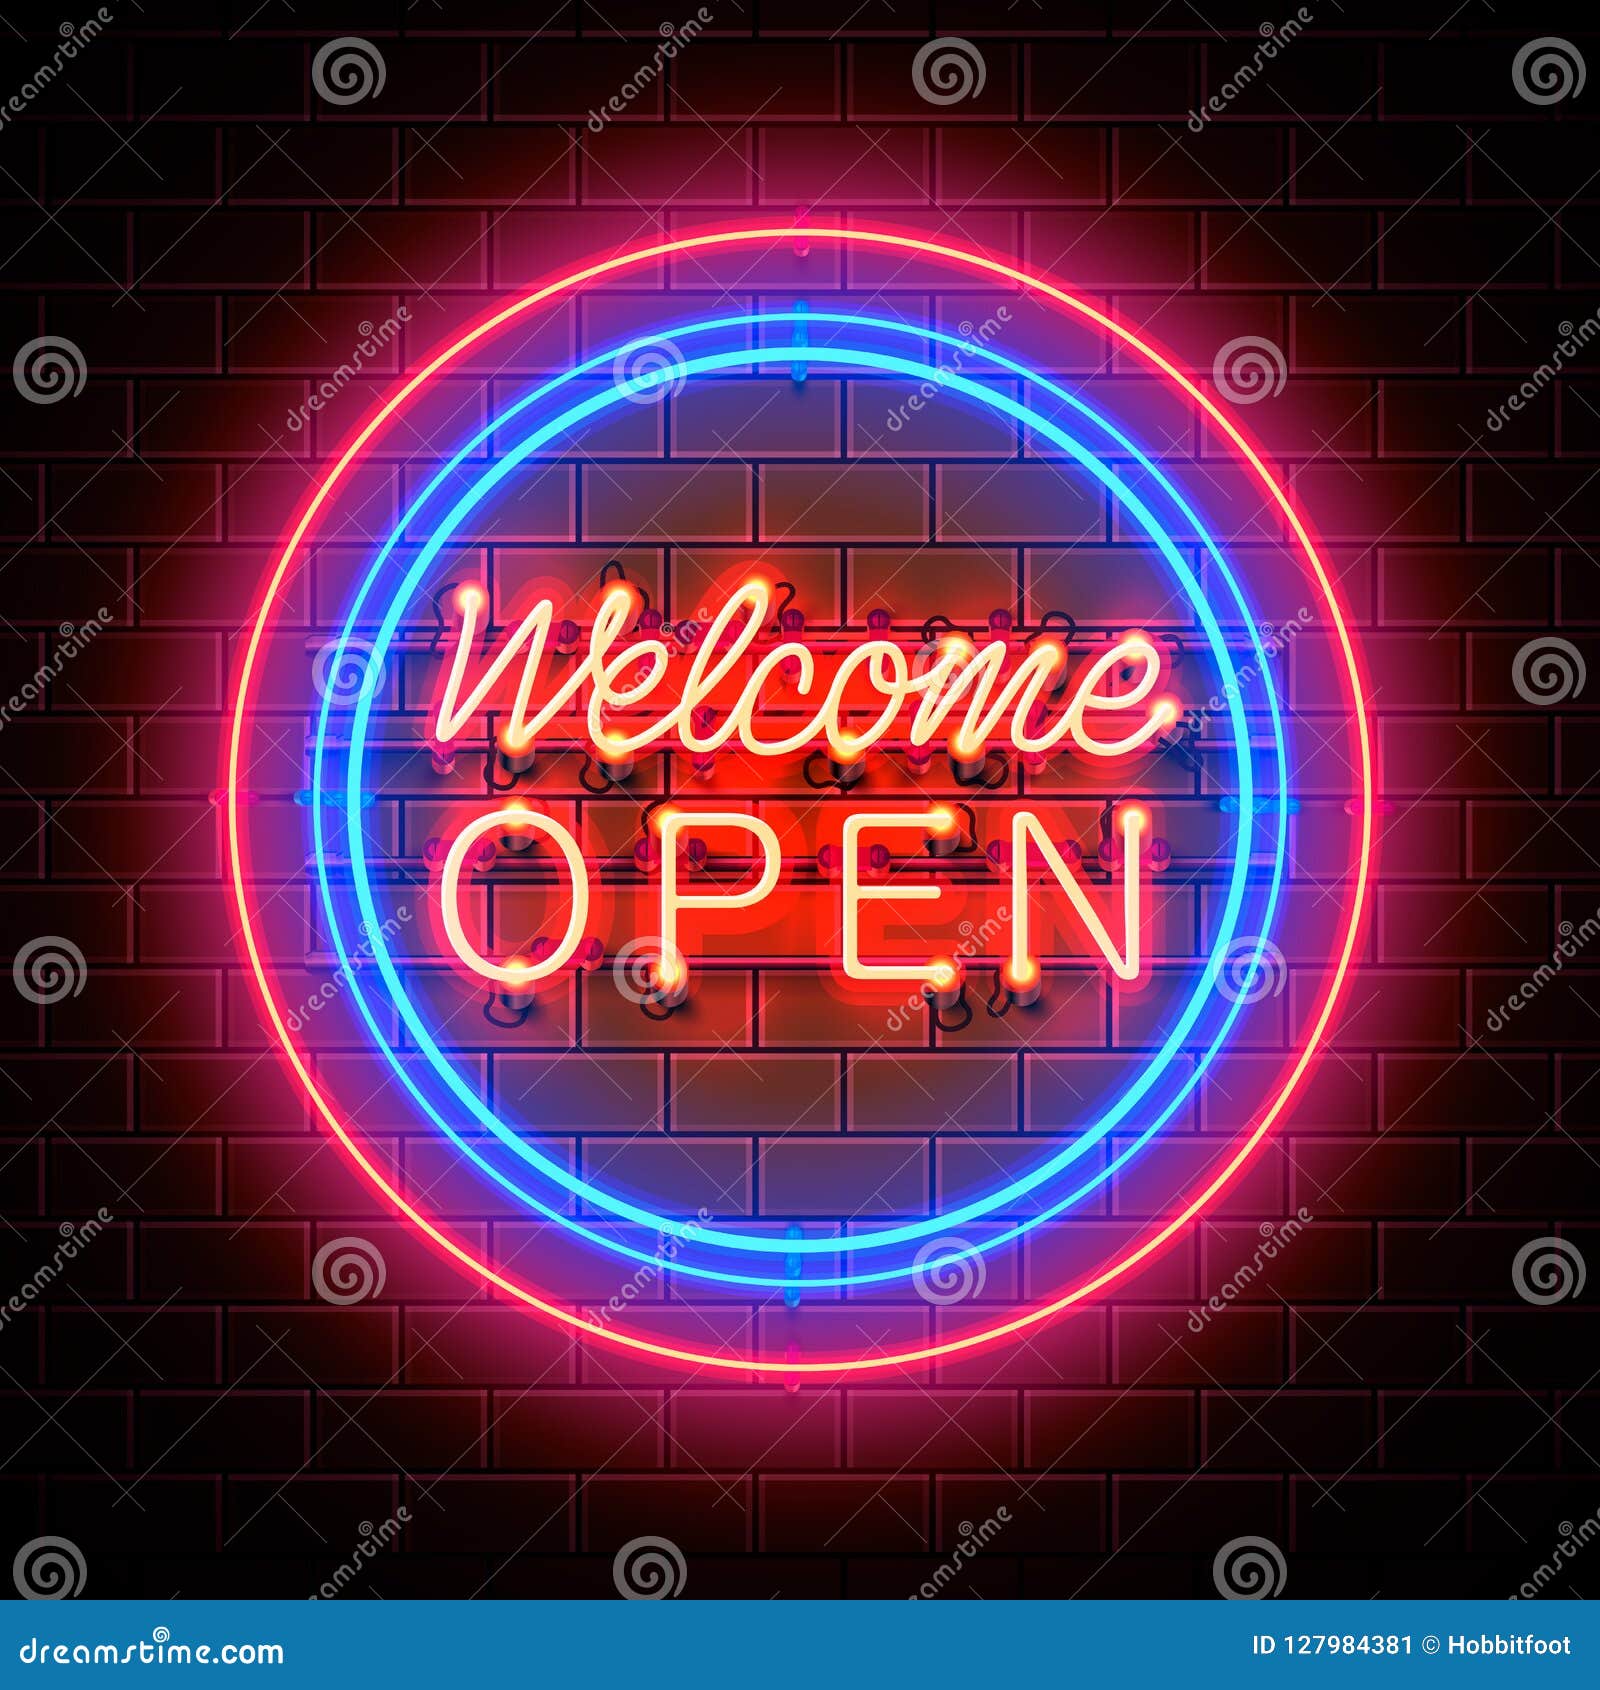 neon welcome open signboard.